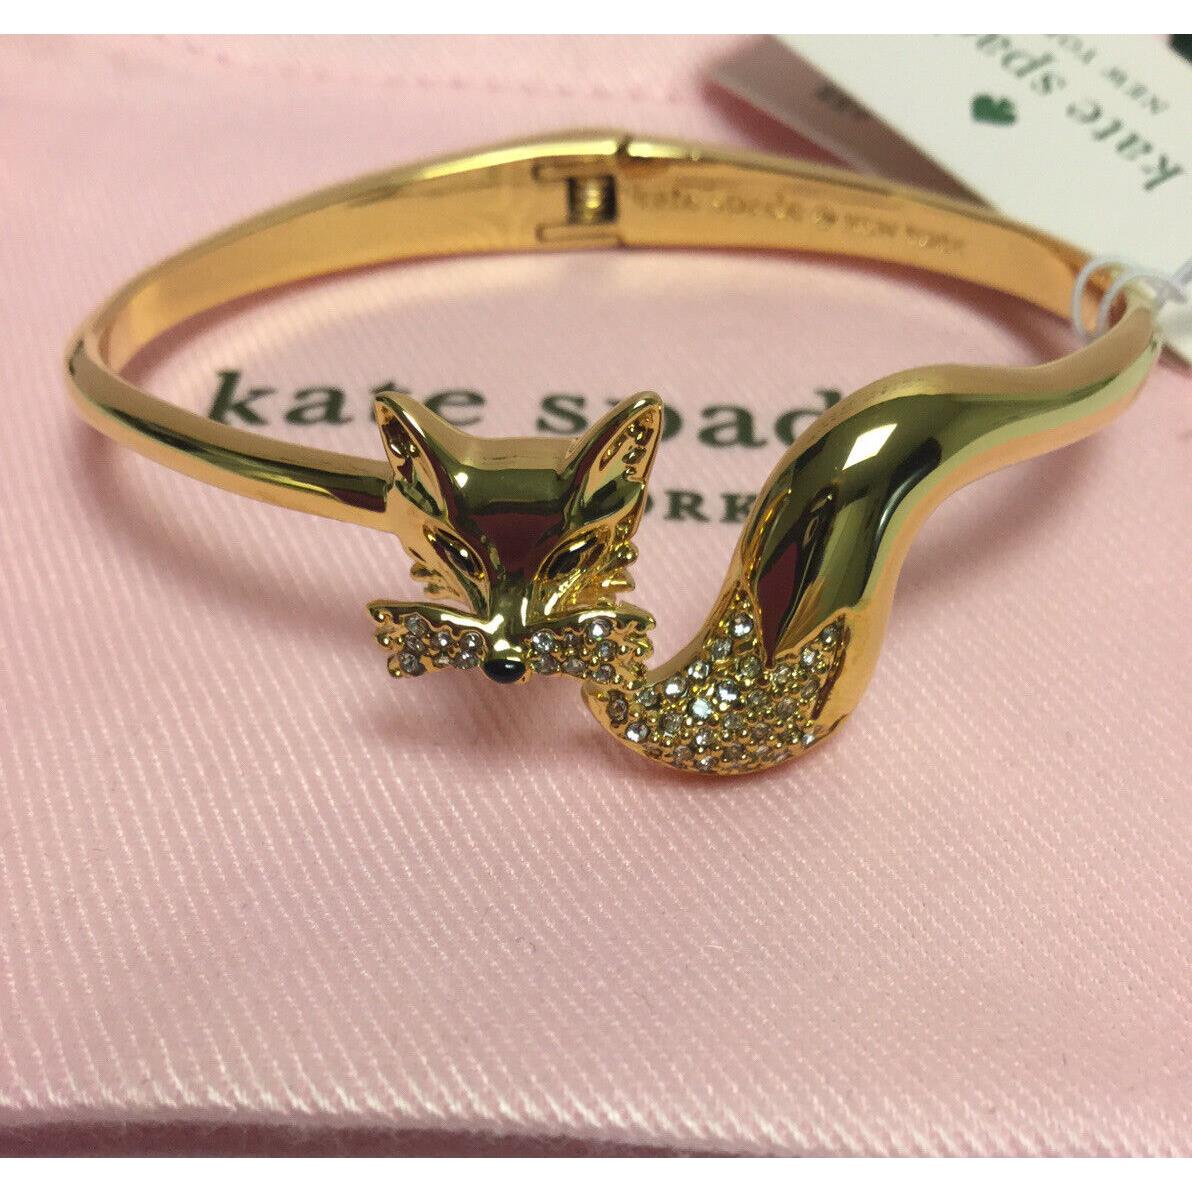 Kate Spade New York So Foxy Fox Bracelet Open Hinge Cuff w/ KS Dust Bag New  - Kate Spade jewelry - 082811700454 | Fash Brands